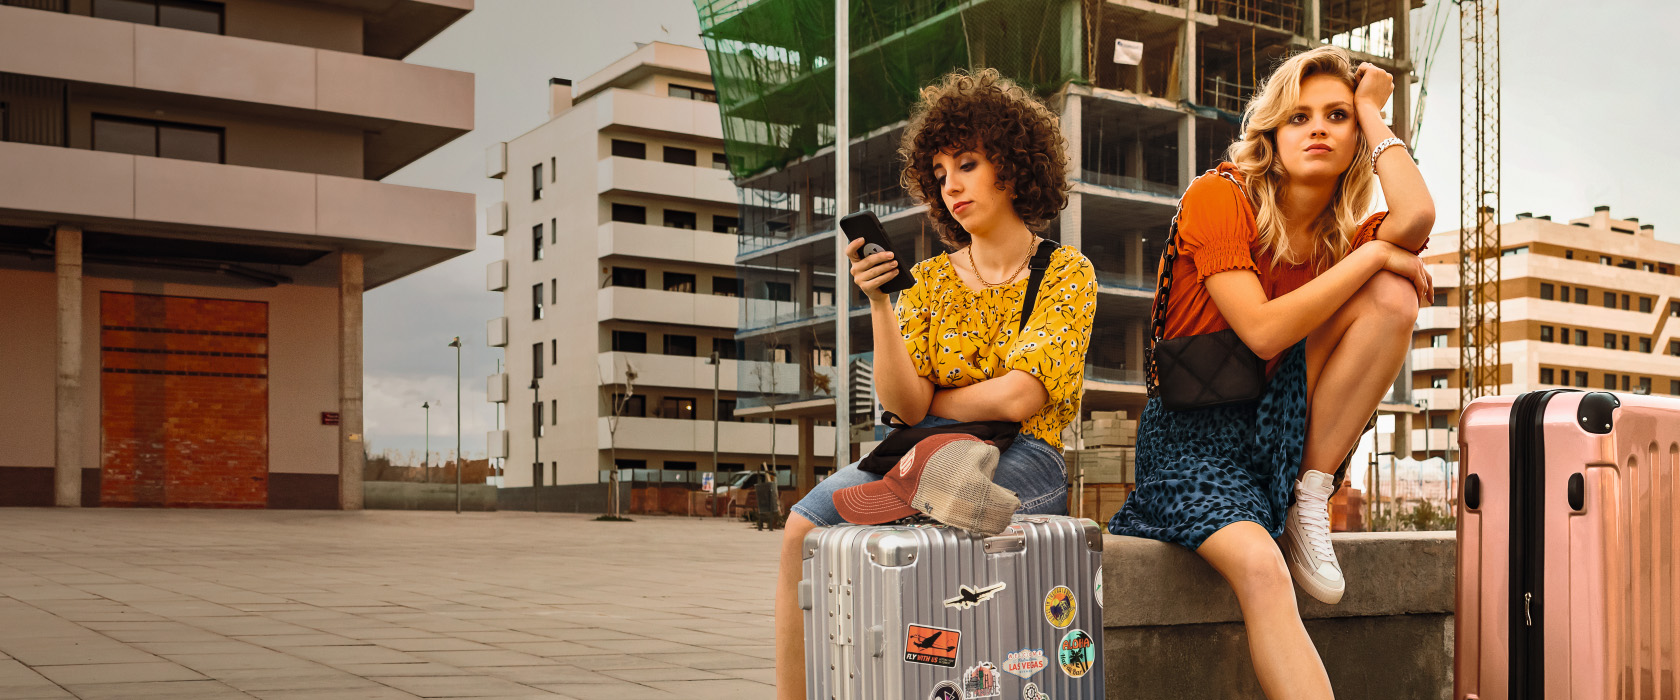 Rechtsschutzversicherung: Zwei Urlauberinnen sitzen enttäuscht mit ihrem Gepäck vor einer Bauruine. Die linke blickt auf Ihr Smartphone.